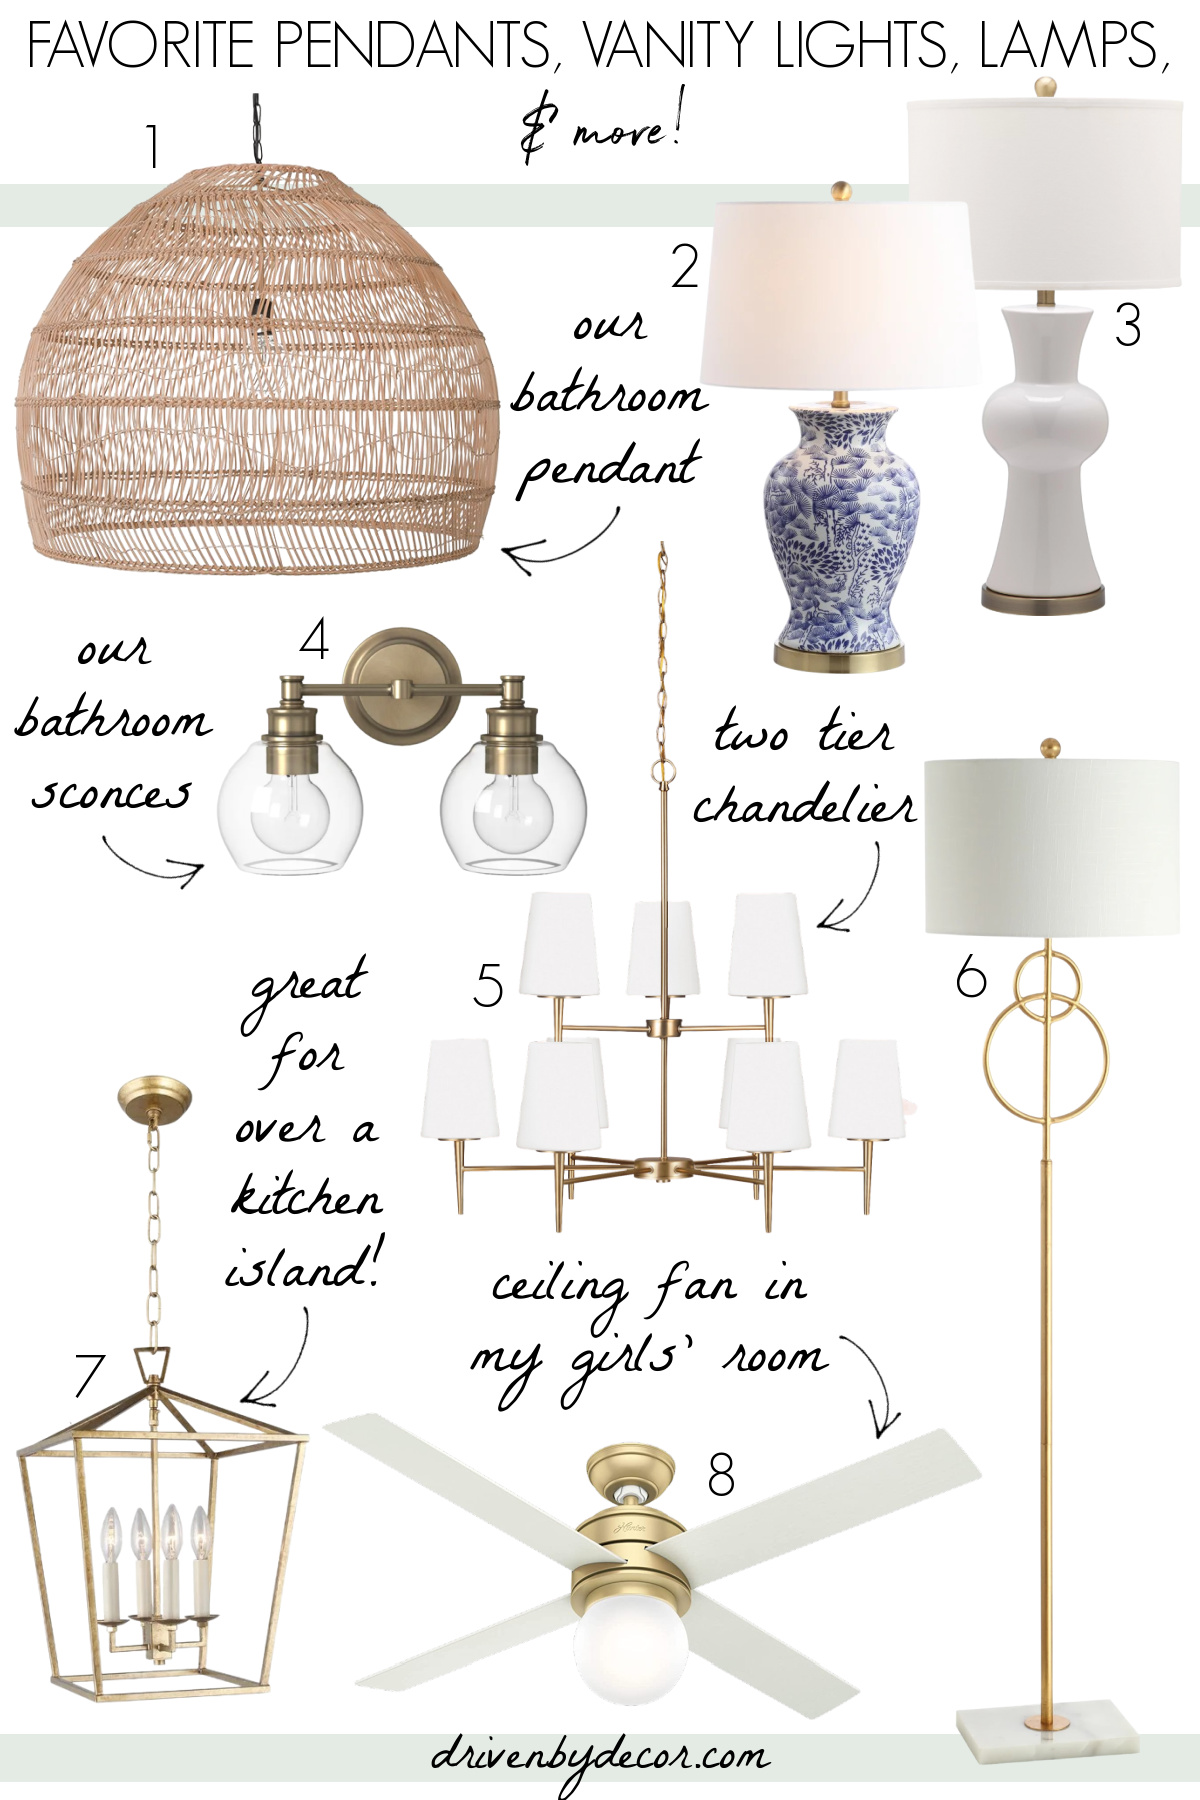 Favorite pendants, lamps, ceiling fans, & chandeliers